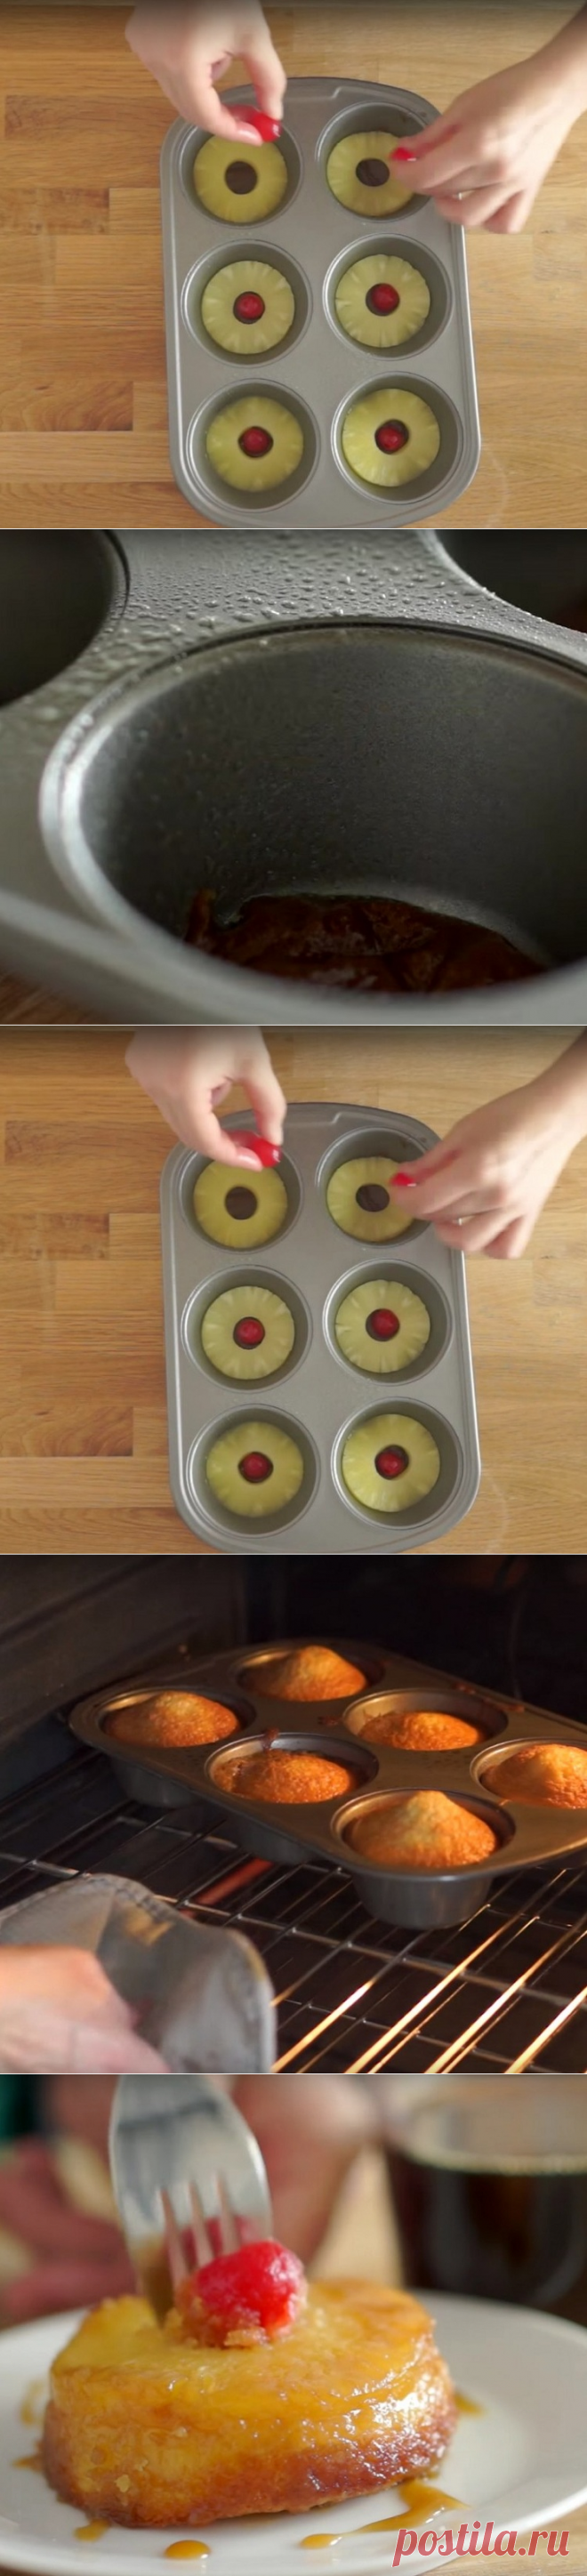 Она выложила колечки ананаса в форму для кексов. В результате получилось потрясающее угощение!